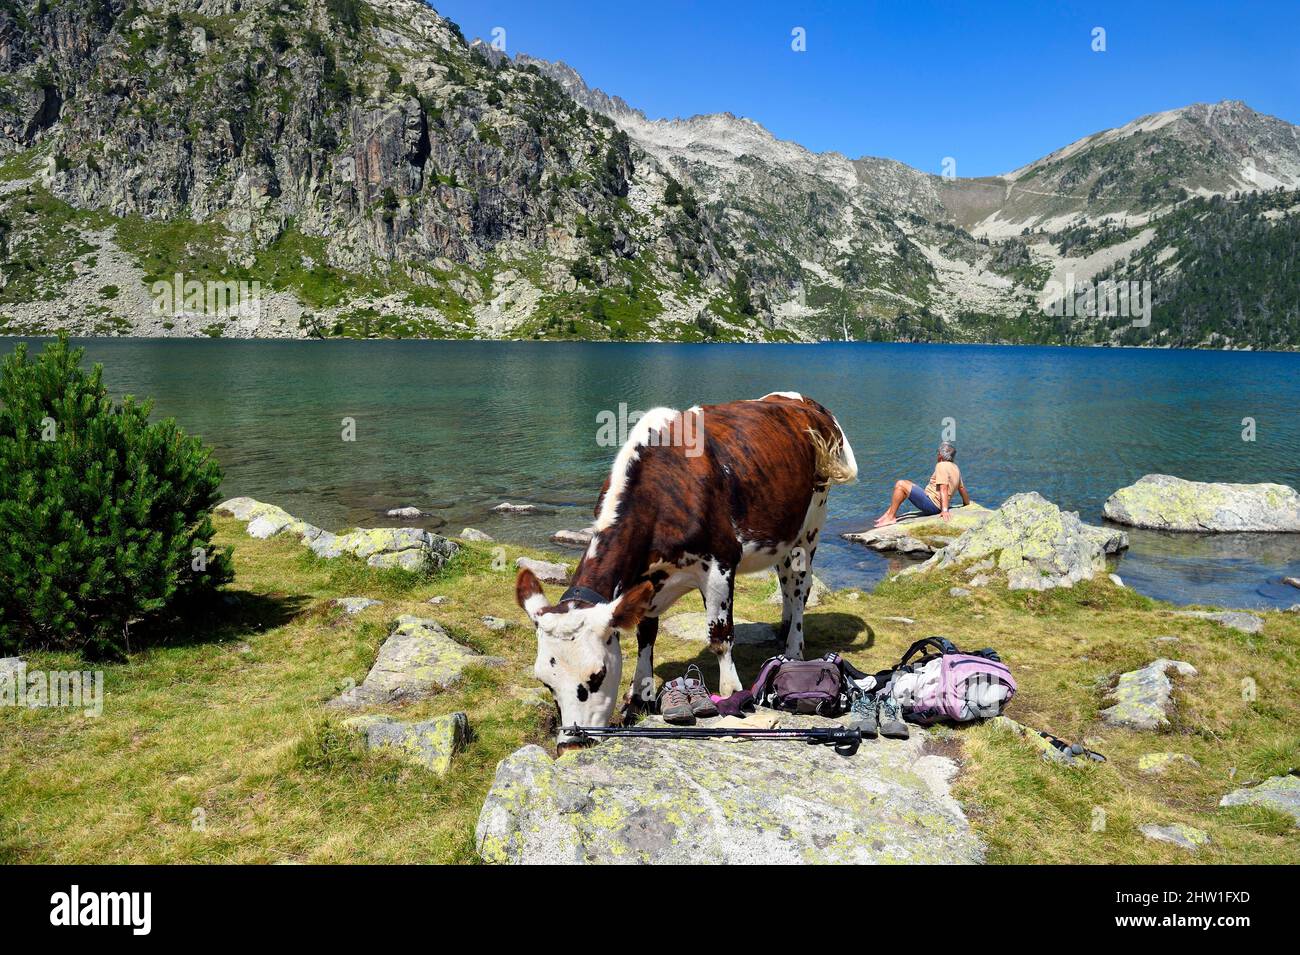 France, Hautes Pyrénées, Saint Lary Soulan et Vielle Aure, Réserve  naturelle nationale de la Neouvielle, randonnée dans les lacs de la  Neouvielle, vaches dans les pâturages de montagne au lac Aubert et